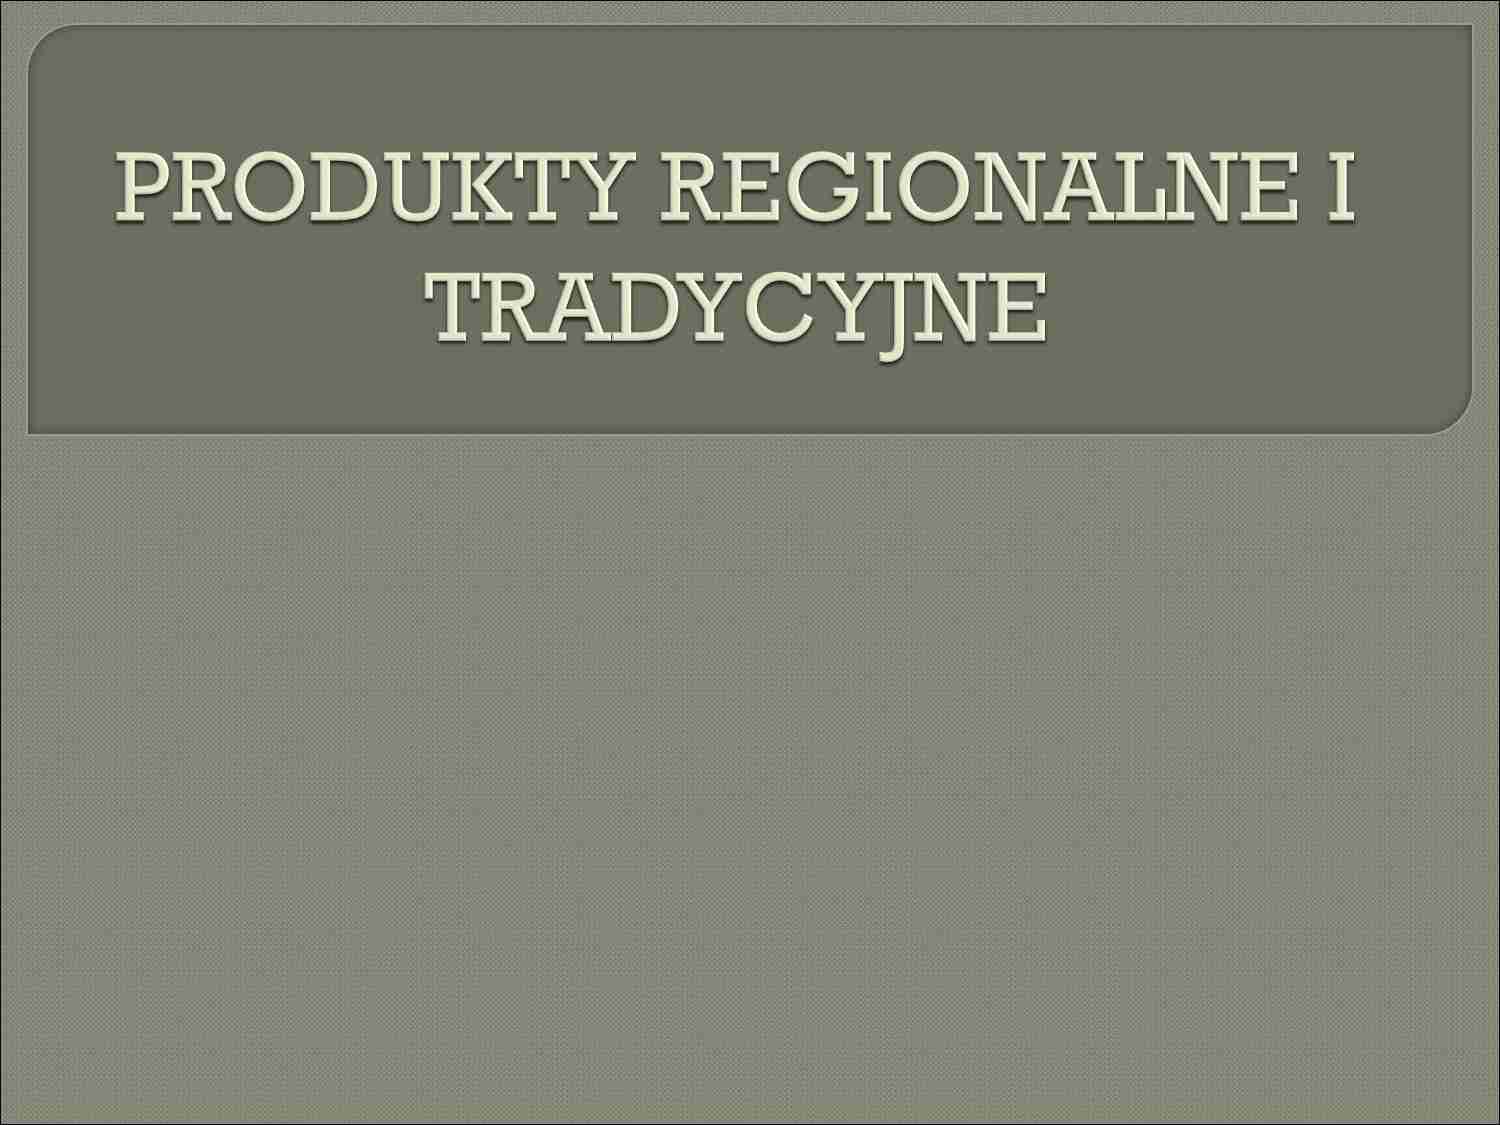 PRODUKTY REGIONALNE I TRADYCYJNE - prezentacja na politykę agralną - strona 1